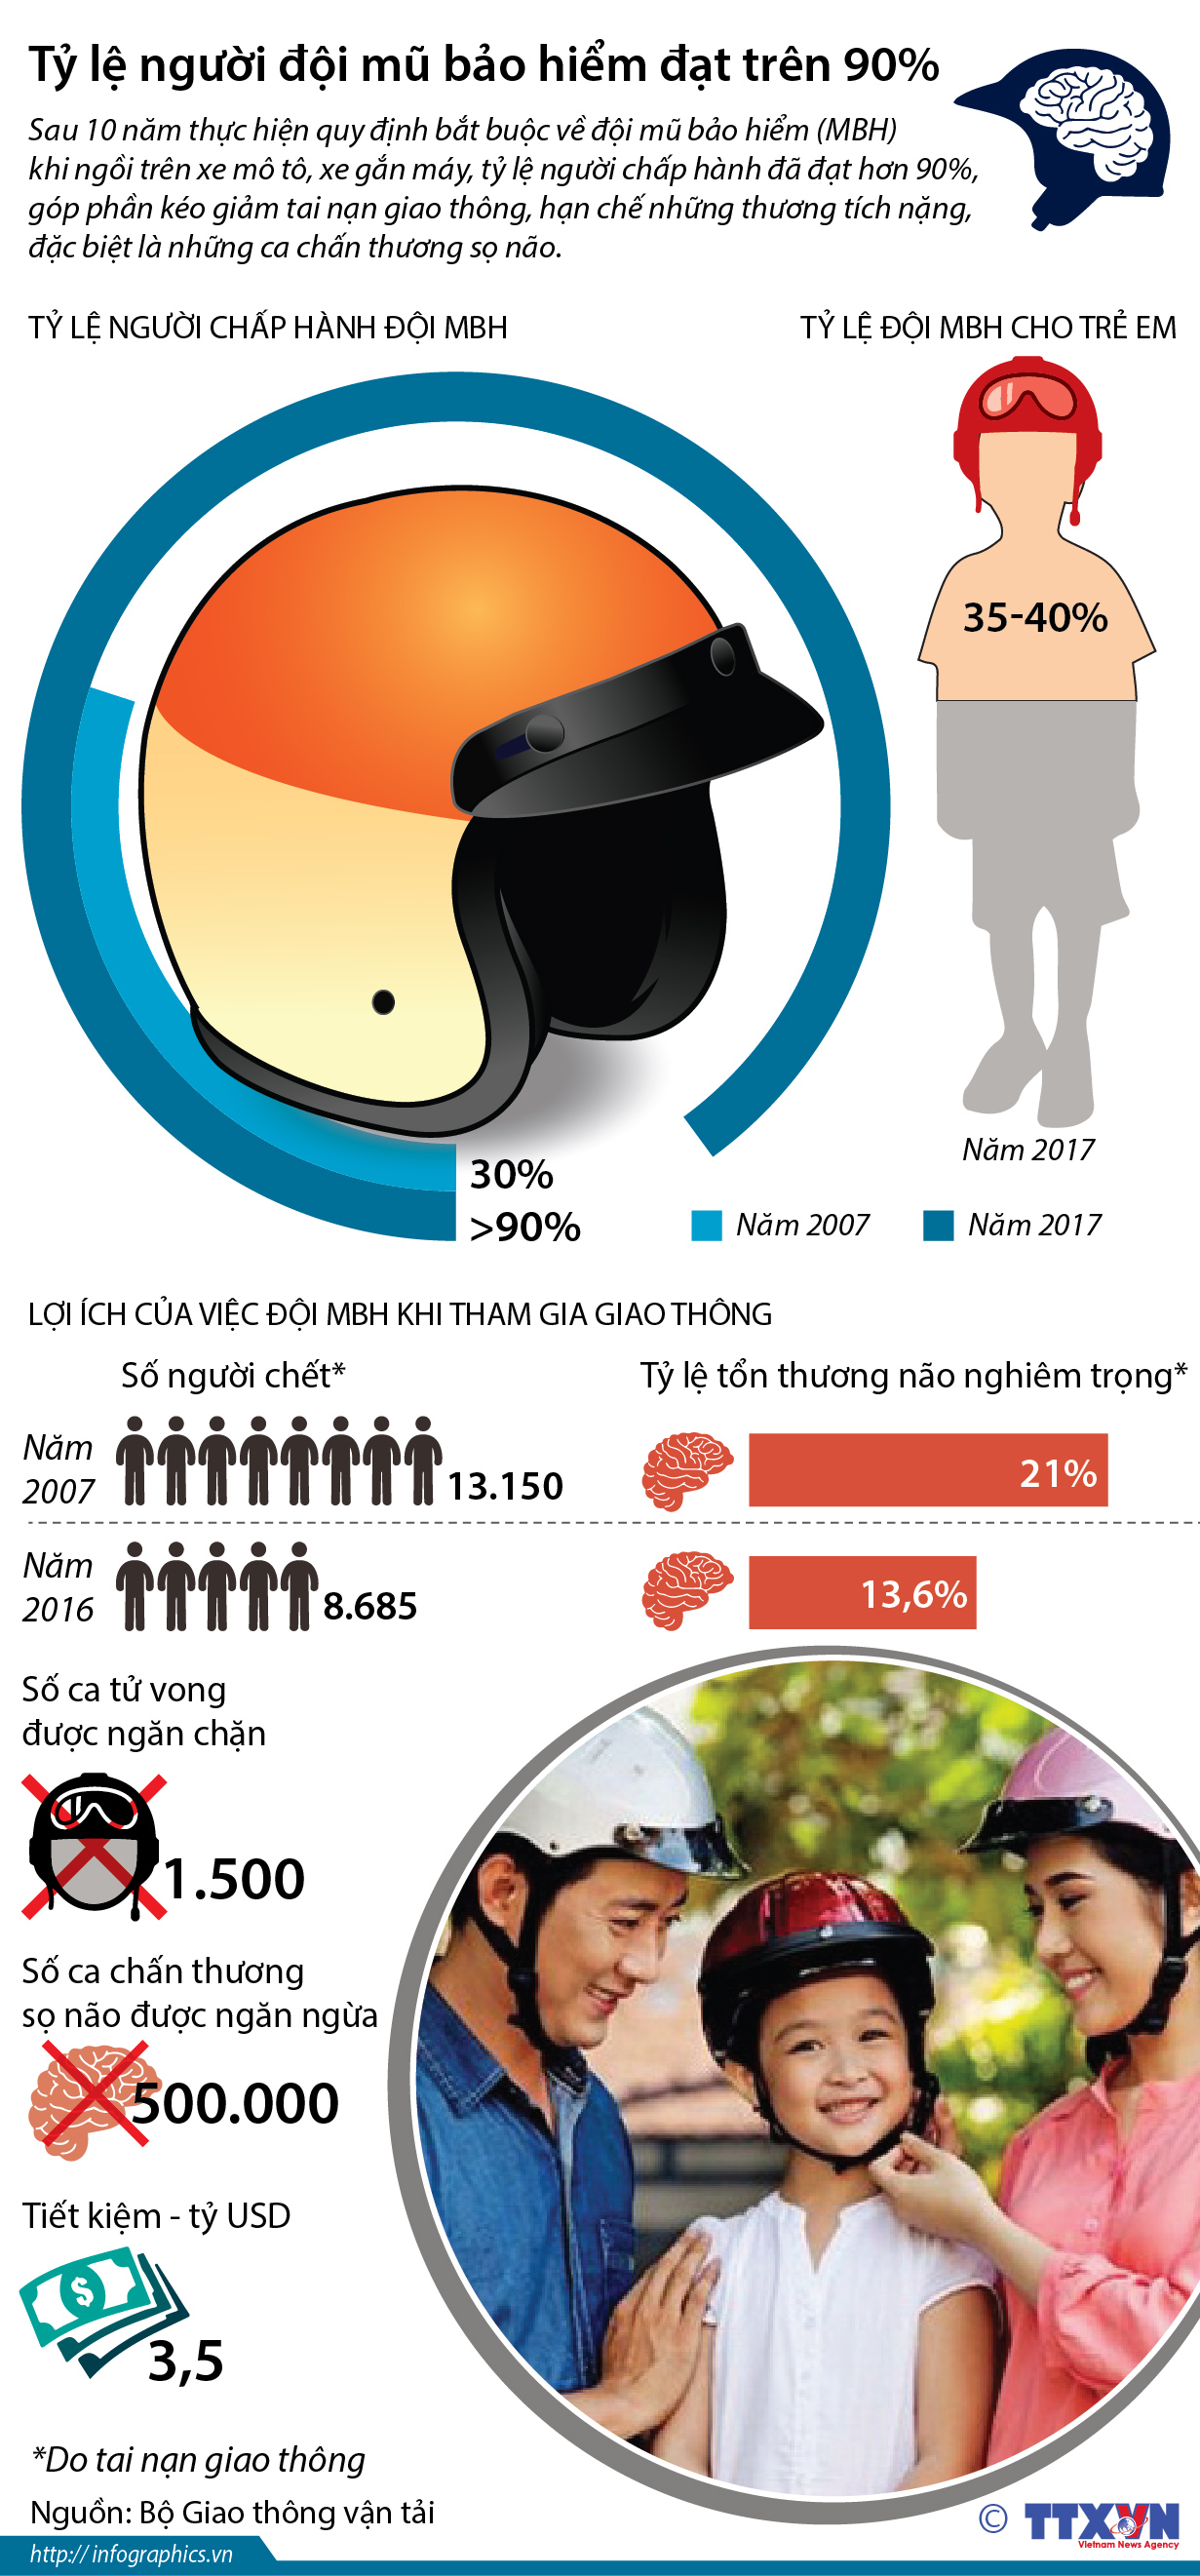 Tỷ lệ người đội mũ bảo hiểm đạt trên 90%